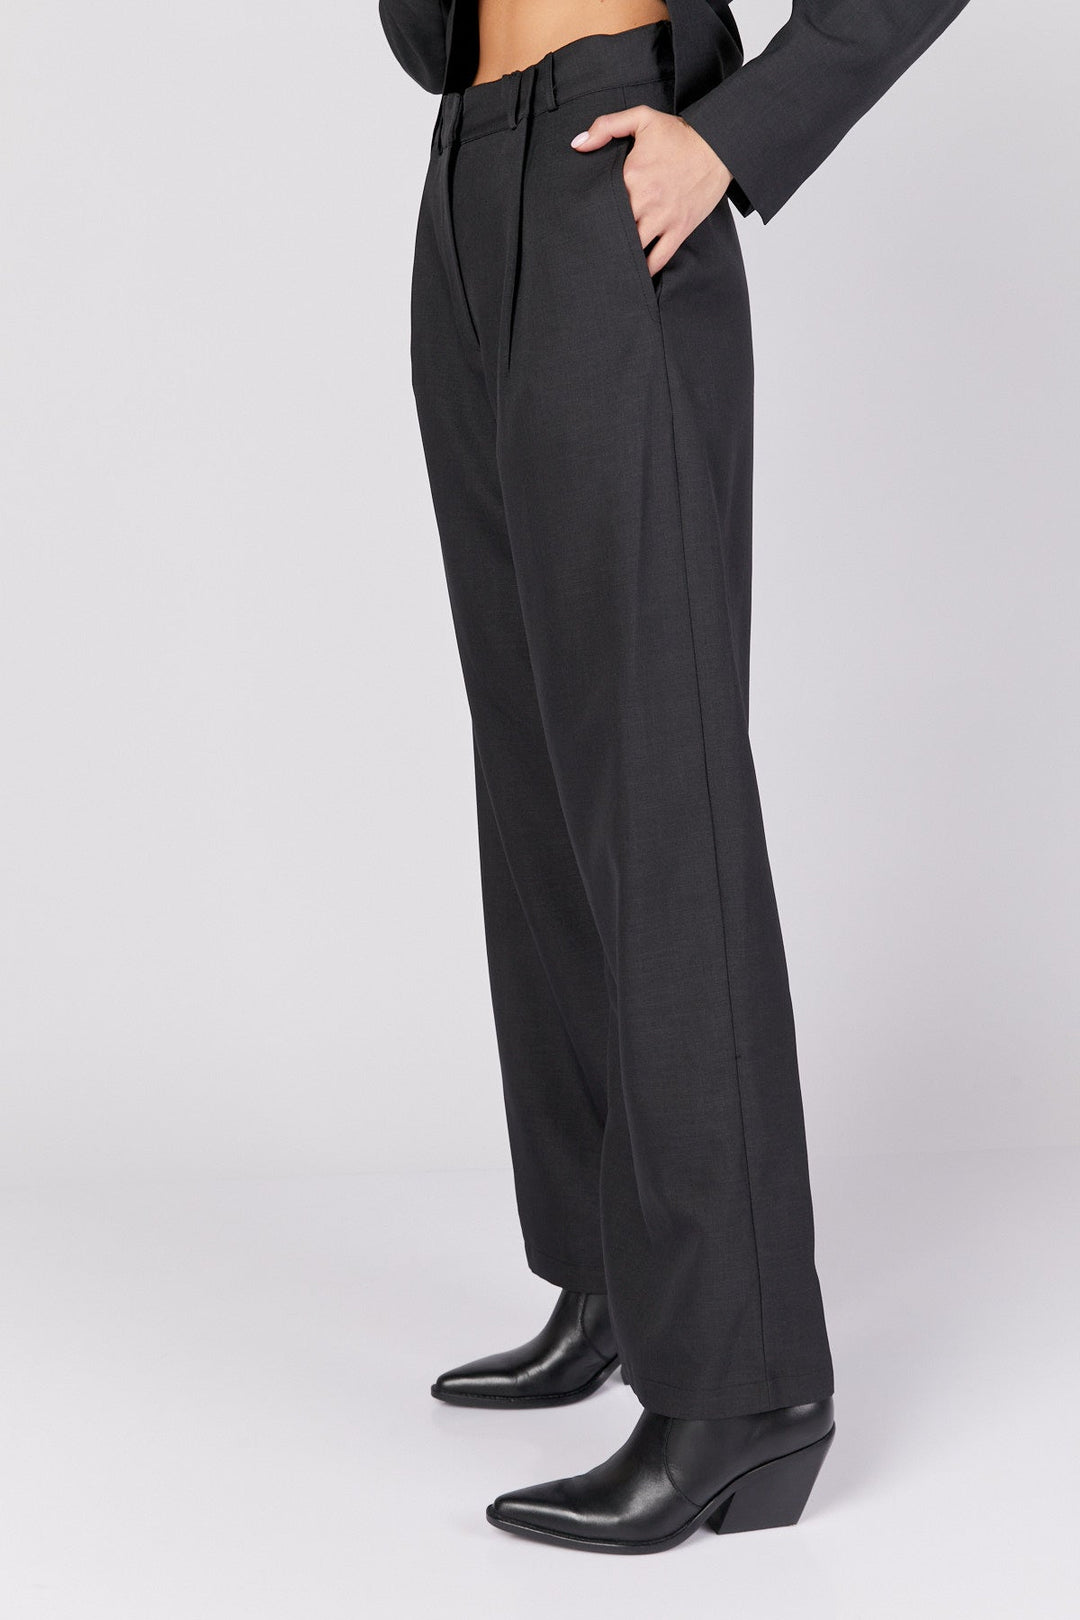 מכנסי ג'ונסון בצבע שחור - Dana Sidi